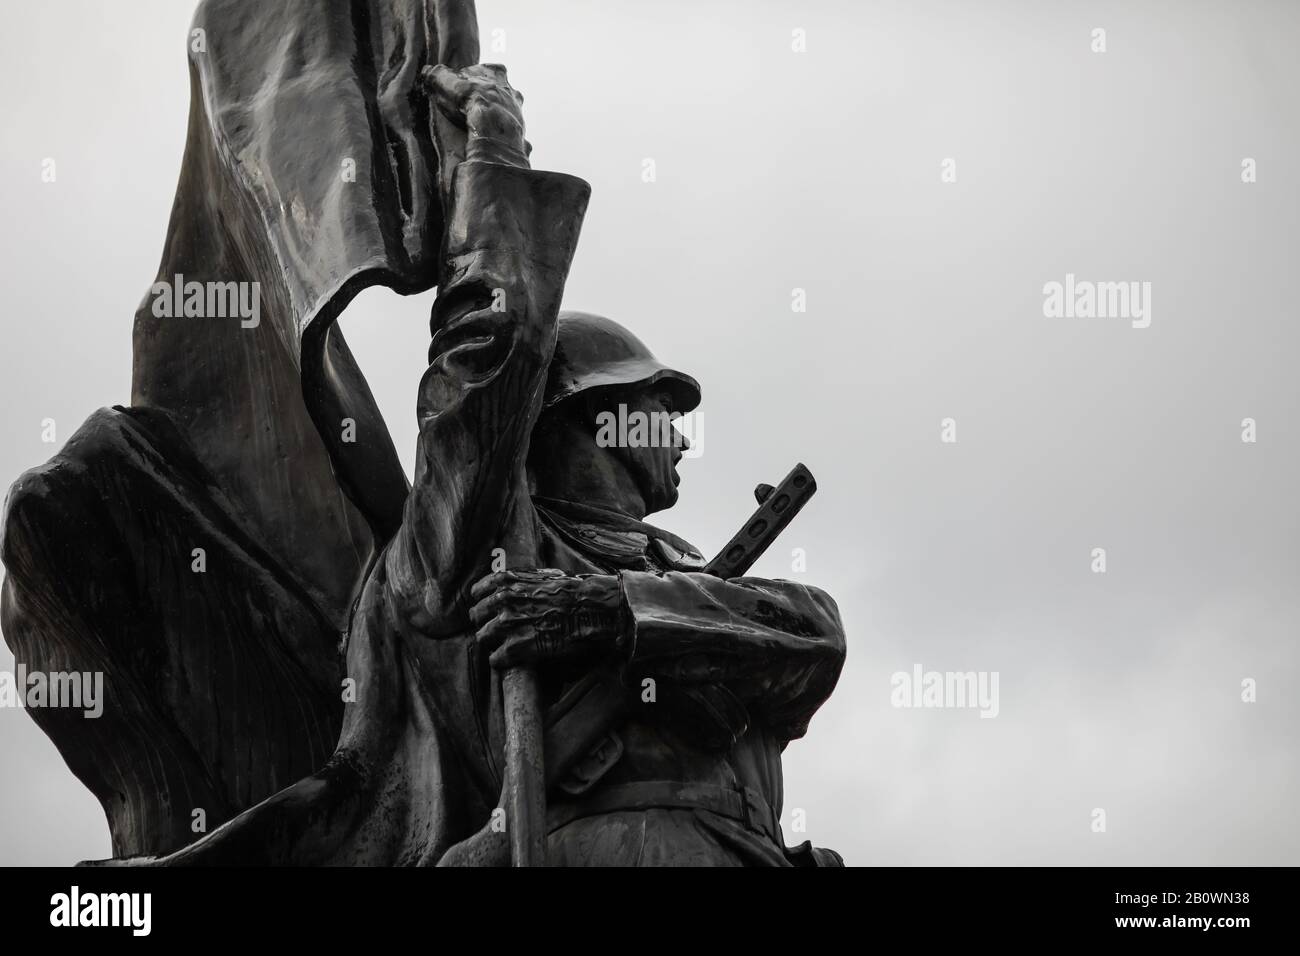 Bukarest, Rumänien - 21. Februar 2020: Statue des sowjetischen Soldaten auf dem Friedhof der Roten Armee in Bukarest während eines kalten und regnerischen Wintertags. Stockfoto